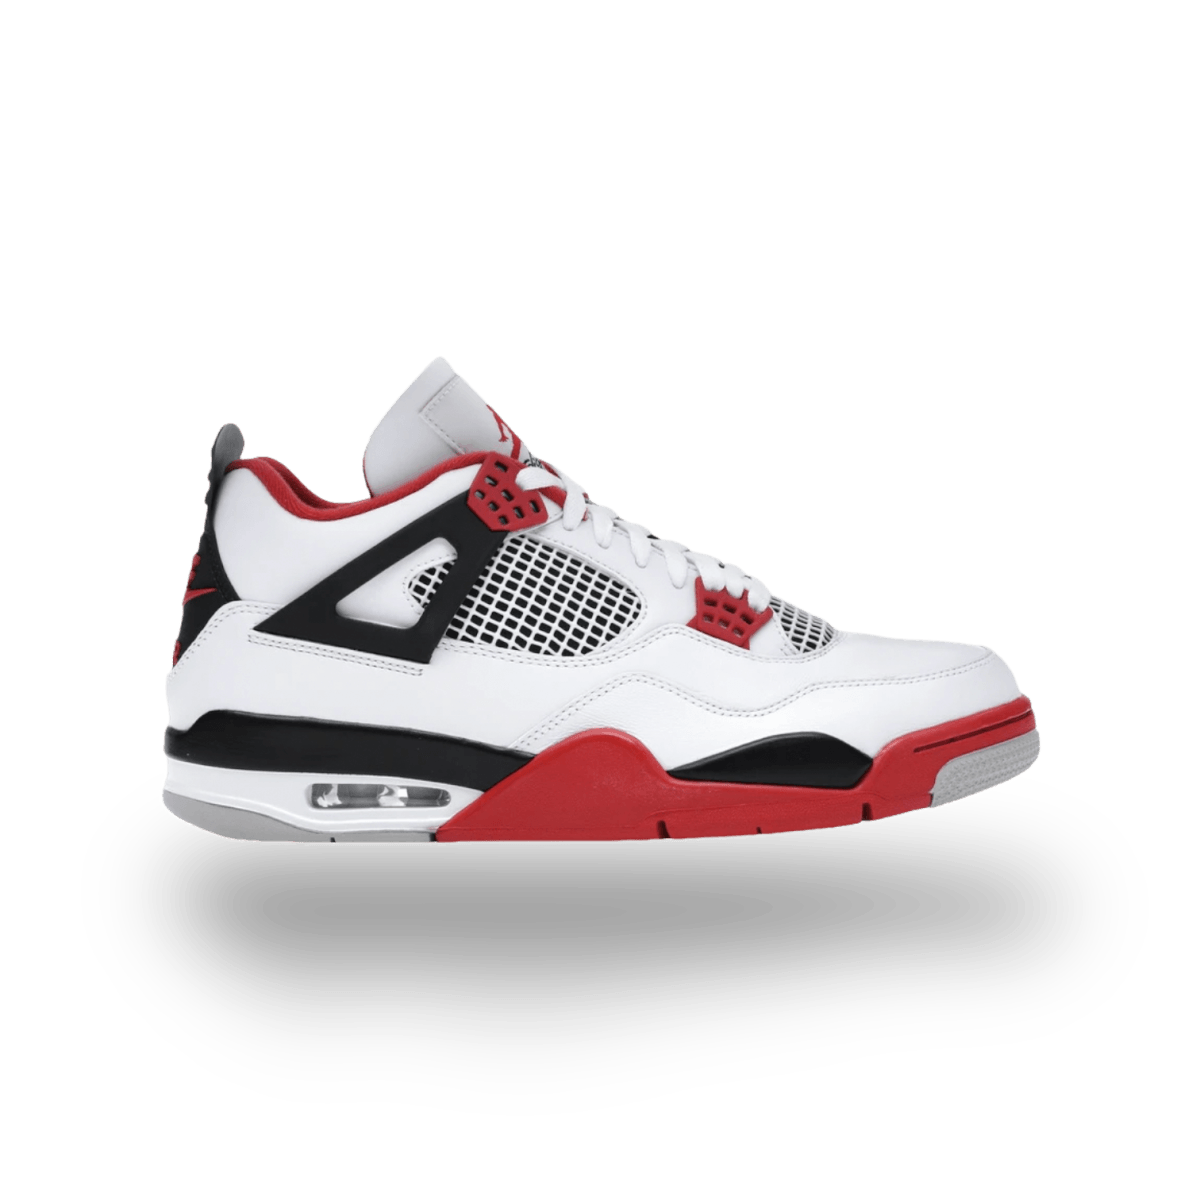 Jordan 4 Retro Fire Red (2020) - Mid Sneaker - Jawns on Fire Sneakers & Streetwear